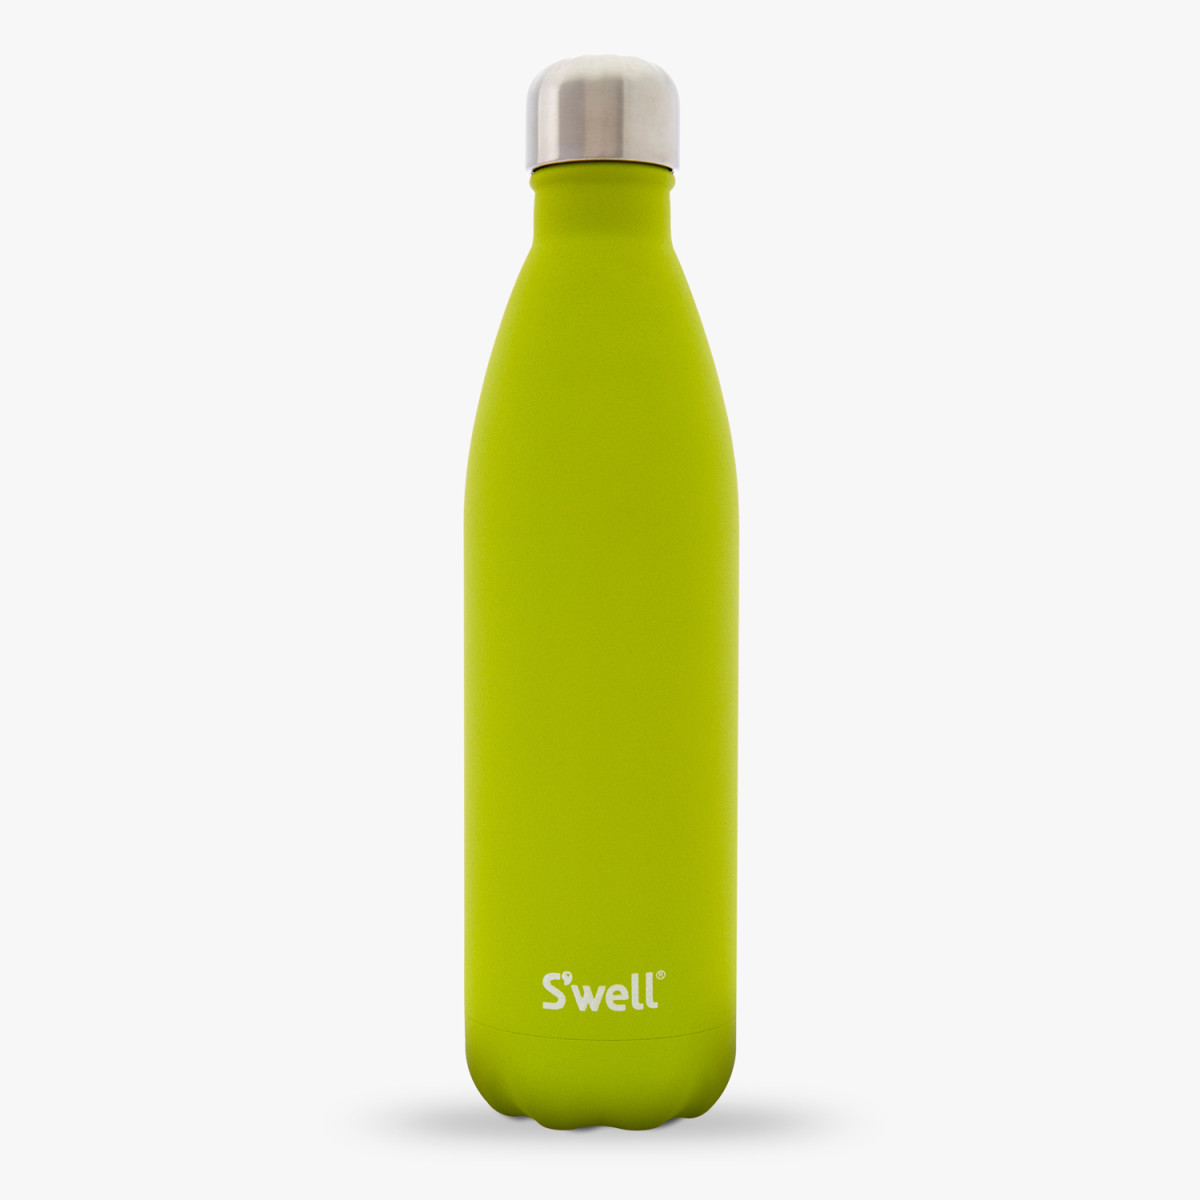 S'well reusable bottle